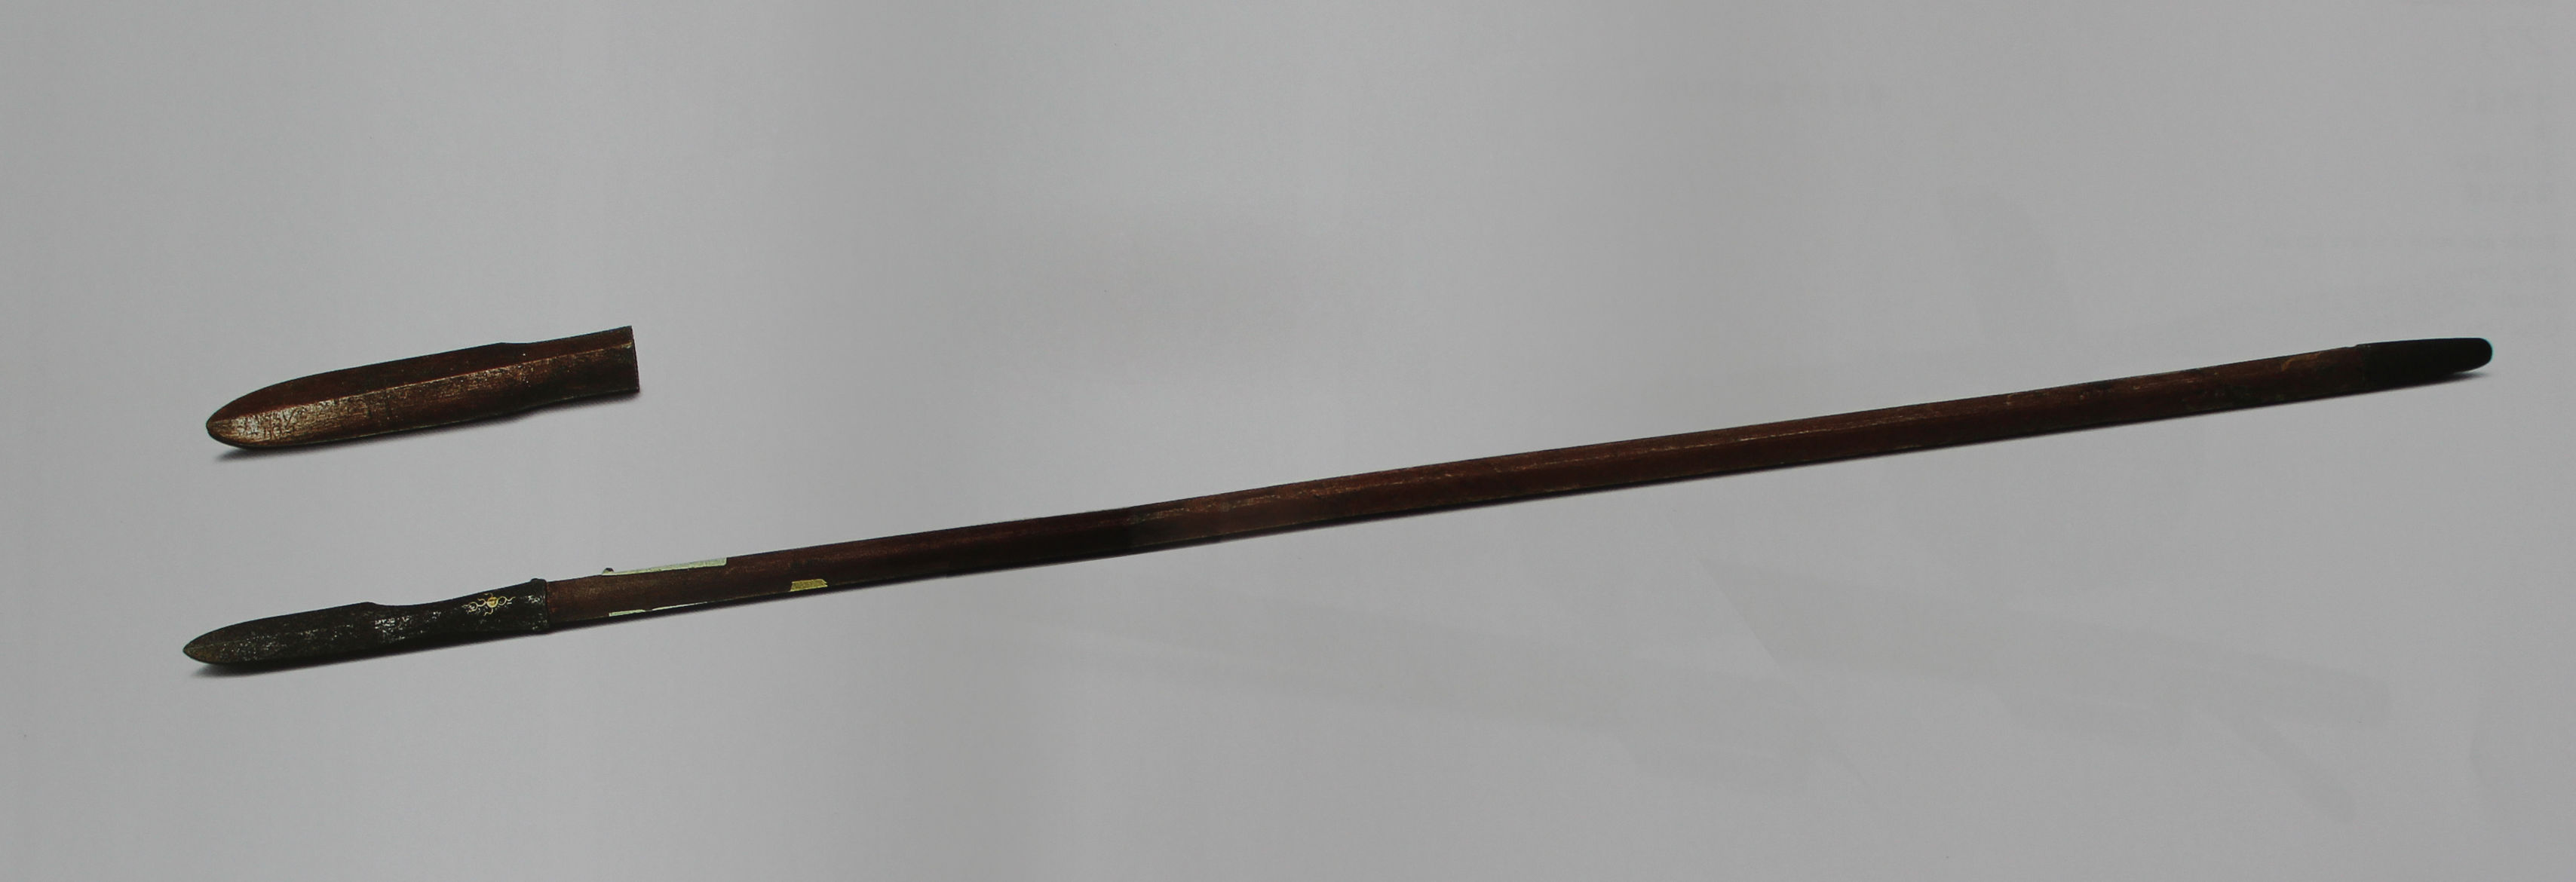 清代手枪,装骨镦,故宫博物院藏本文首发于头条号冷兵器研究所